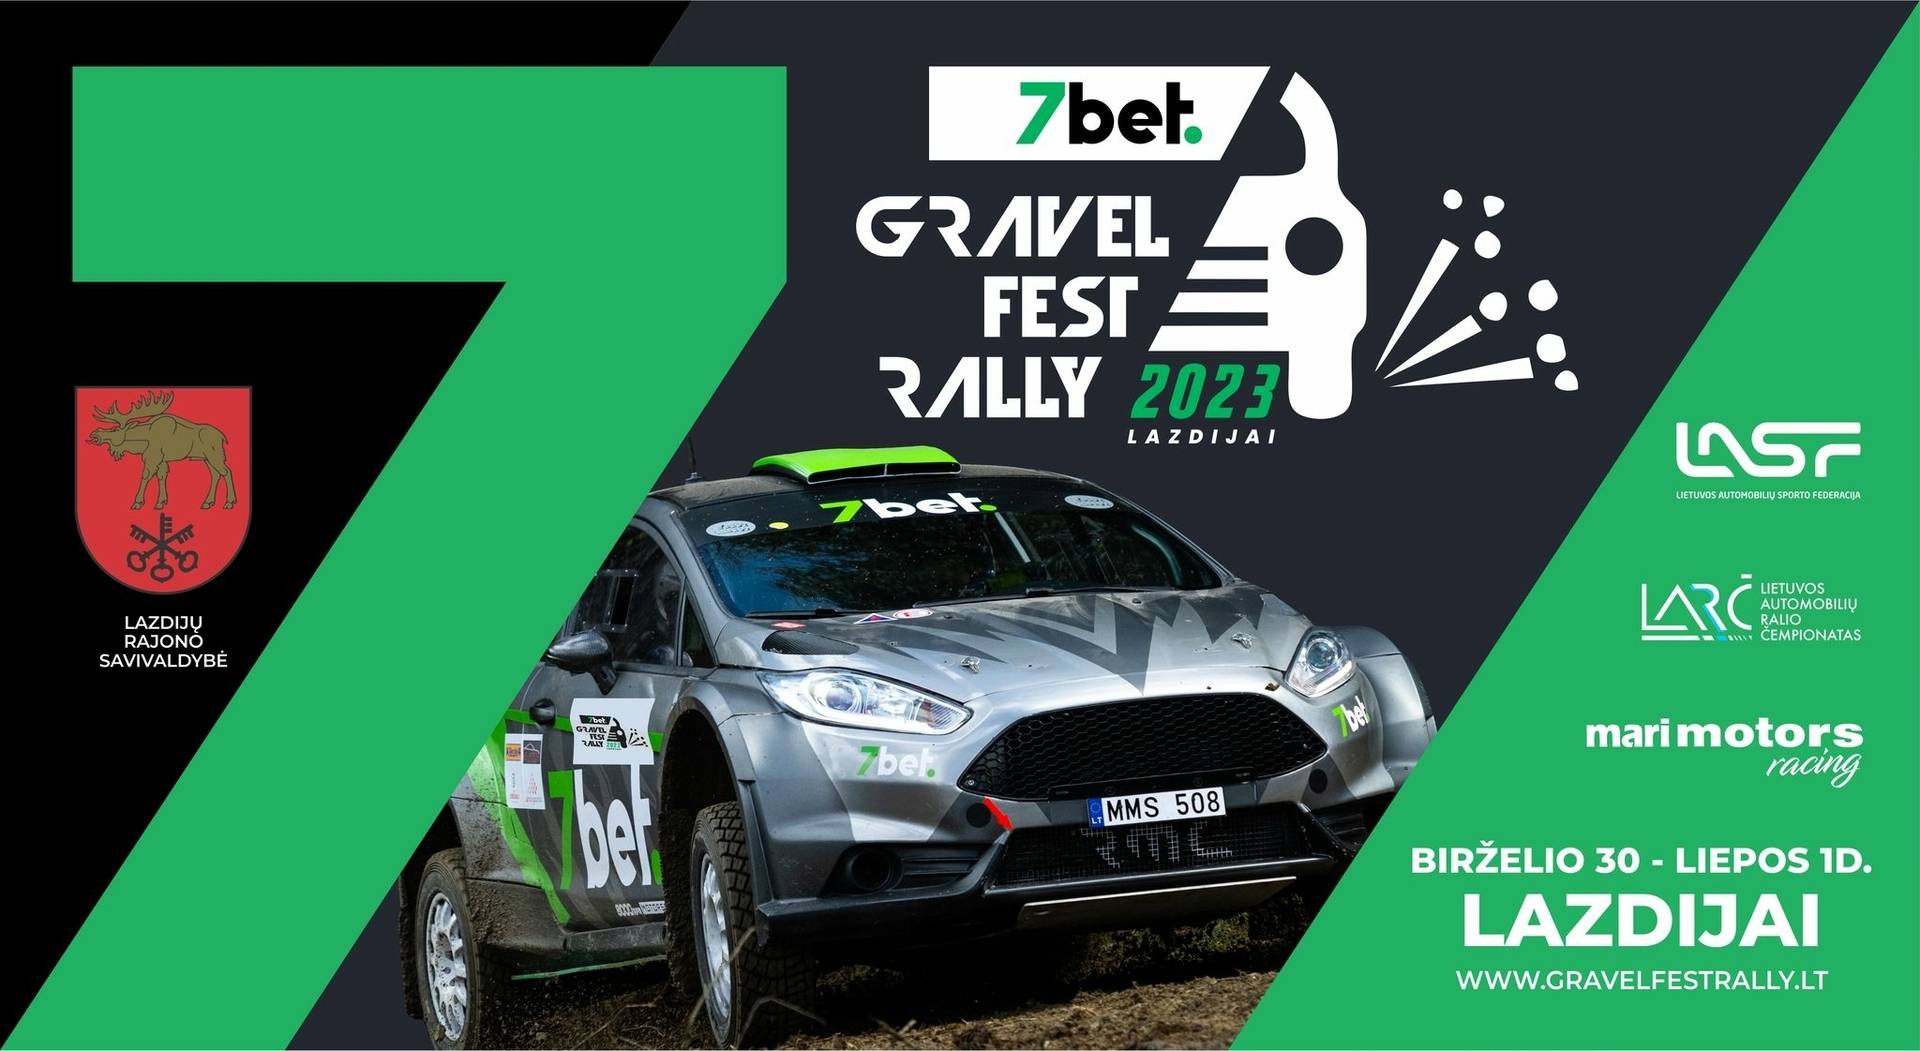 „7bet Gravel Fest Rally – Lazdijai” rozrosło się: począwszy od Mini Rally, w tym roku organizują etap A League